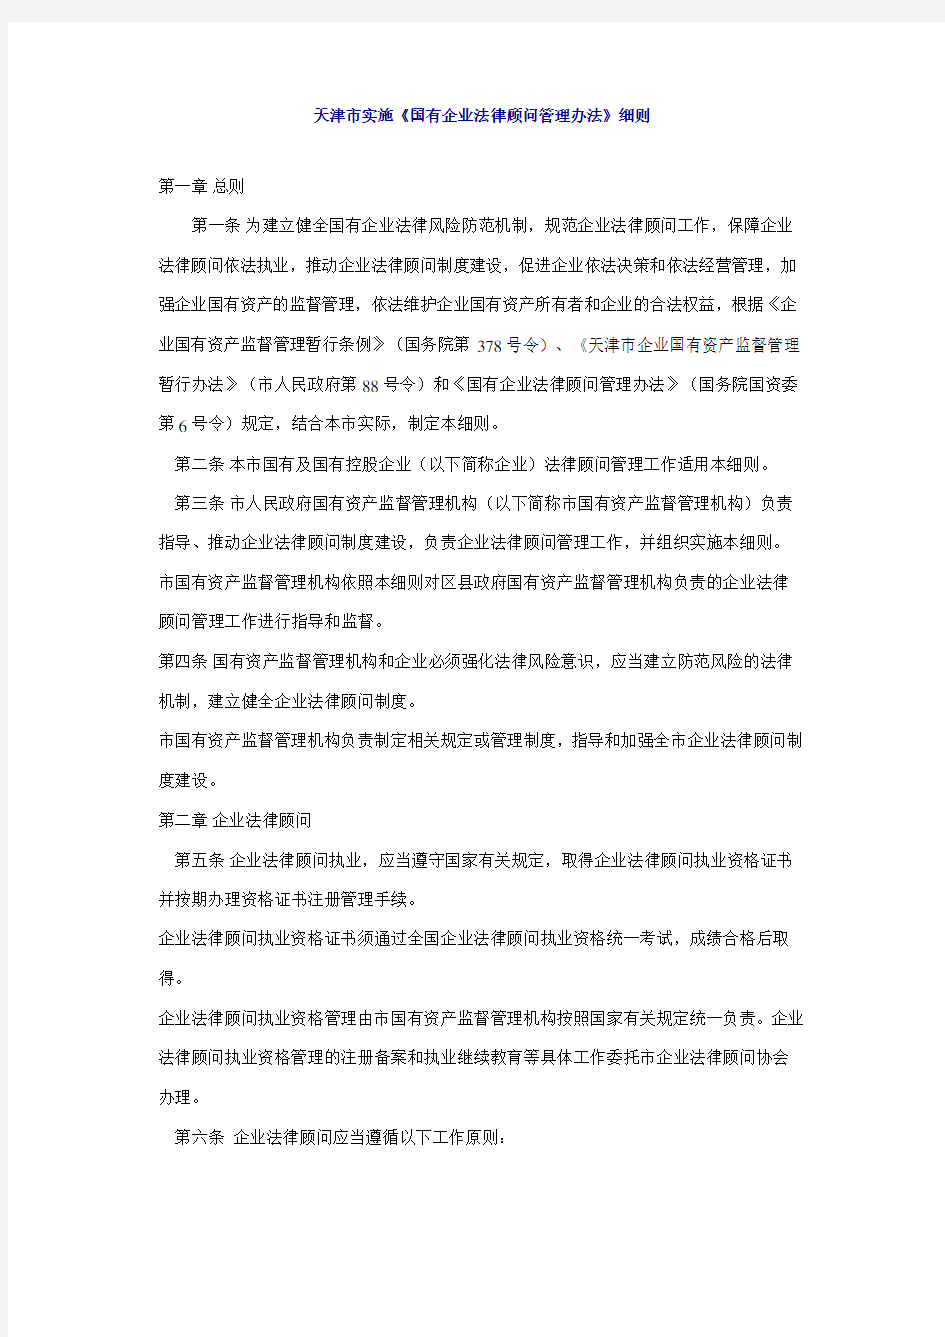 天津市实施《国有企业法律顾问管理办法》细则